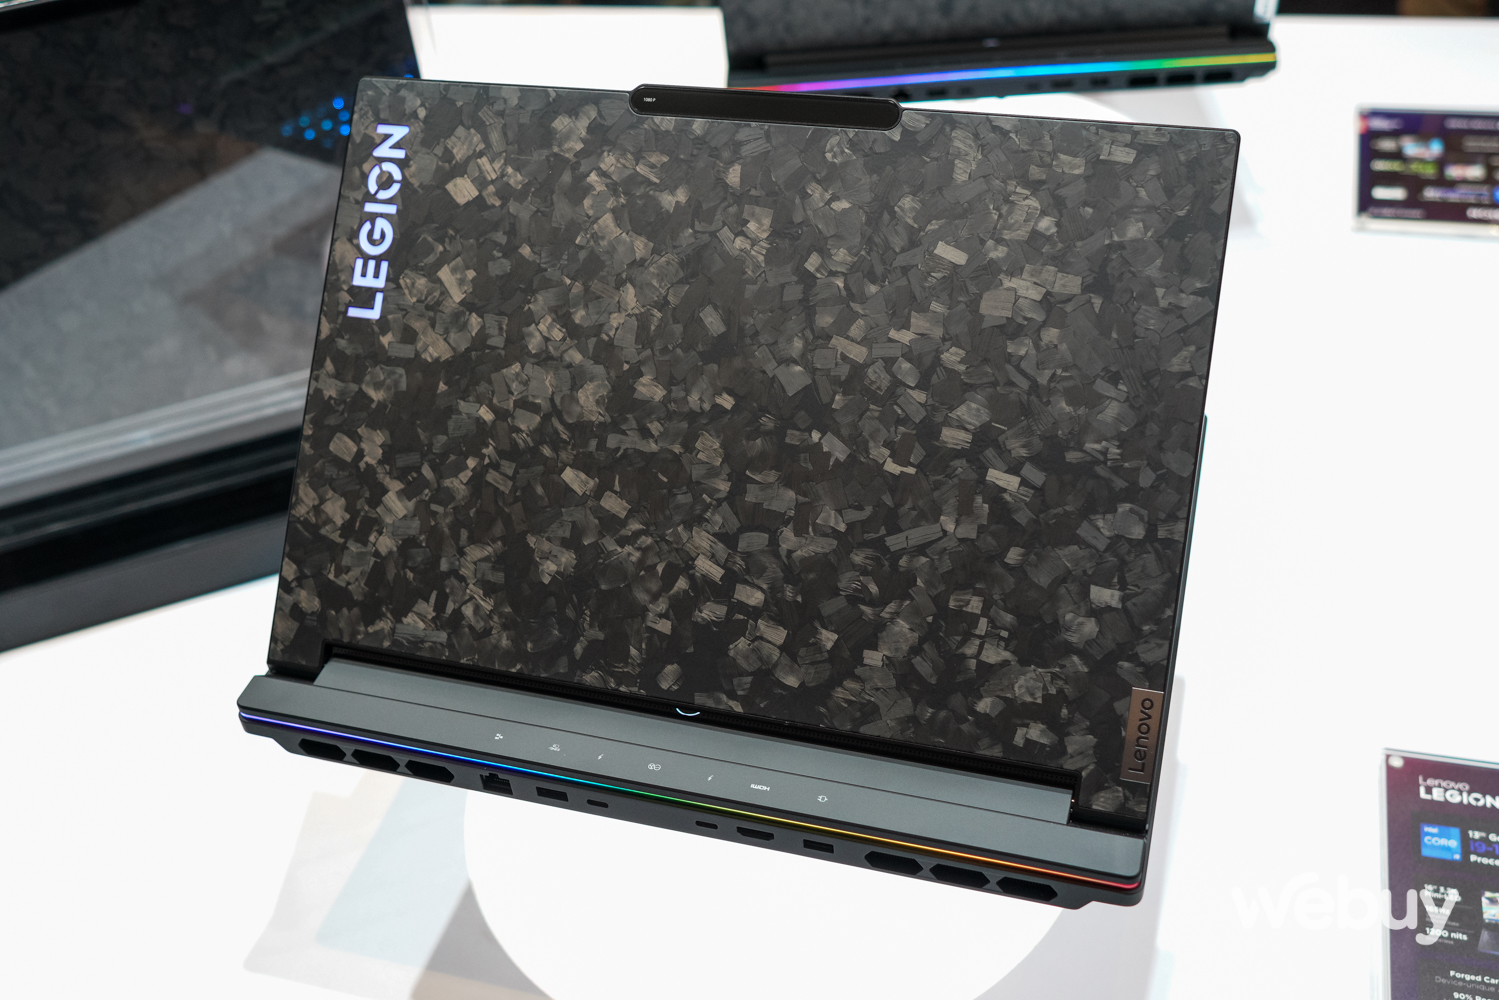 Trên tay laptop gaming đầu bảng Lenovo Legion 9i: Mặt lưng carbon độc bản, hệ thống tản nhiệt nước tích hợp - Ảnh 3.